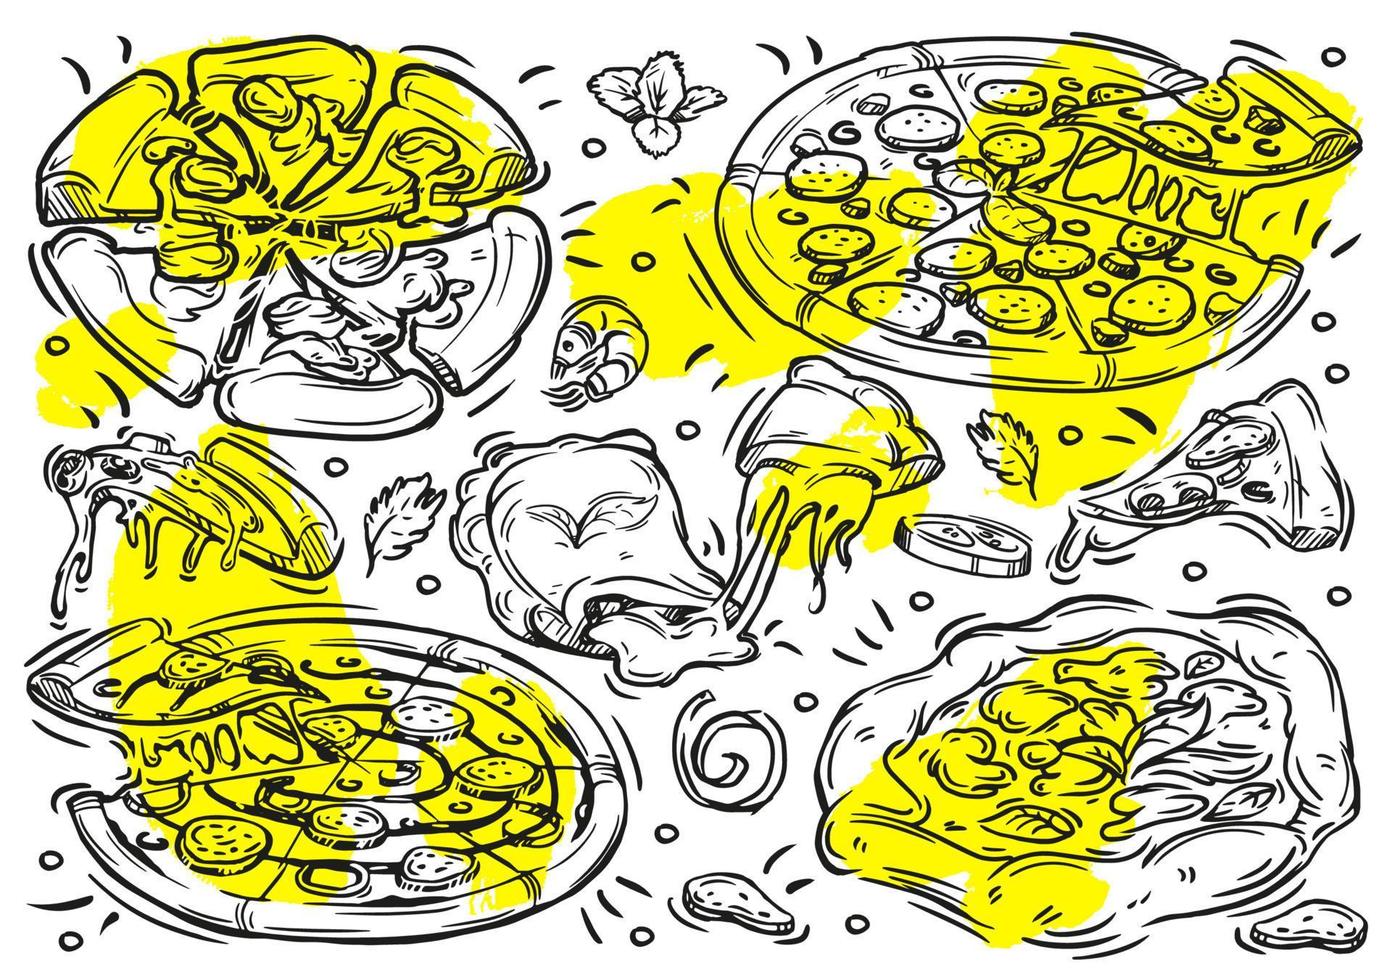 illustrations de lignes vectorielles dessinées à la main avec graphique de pizza sur fond blanc. éléments vintage de griffonnage, ingrédients, pepperoni, calzone, margherita, chicago vecteur